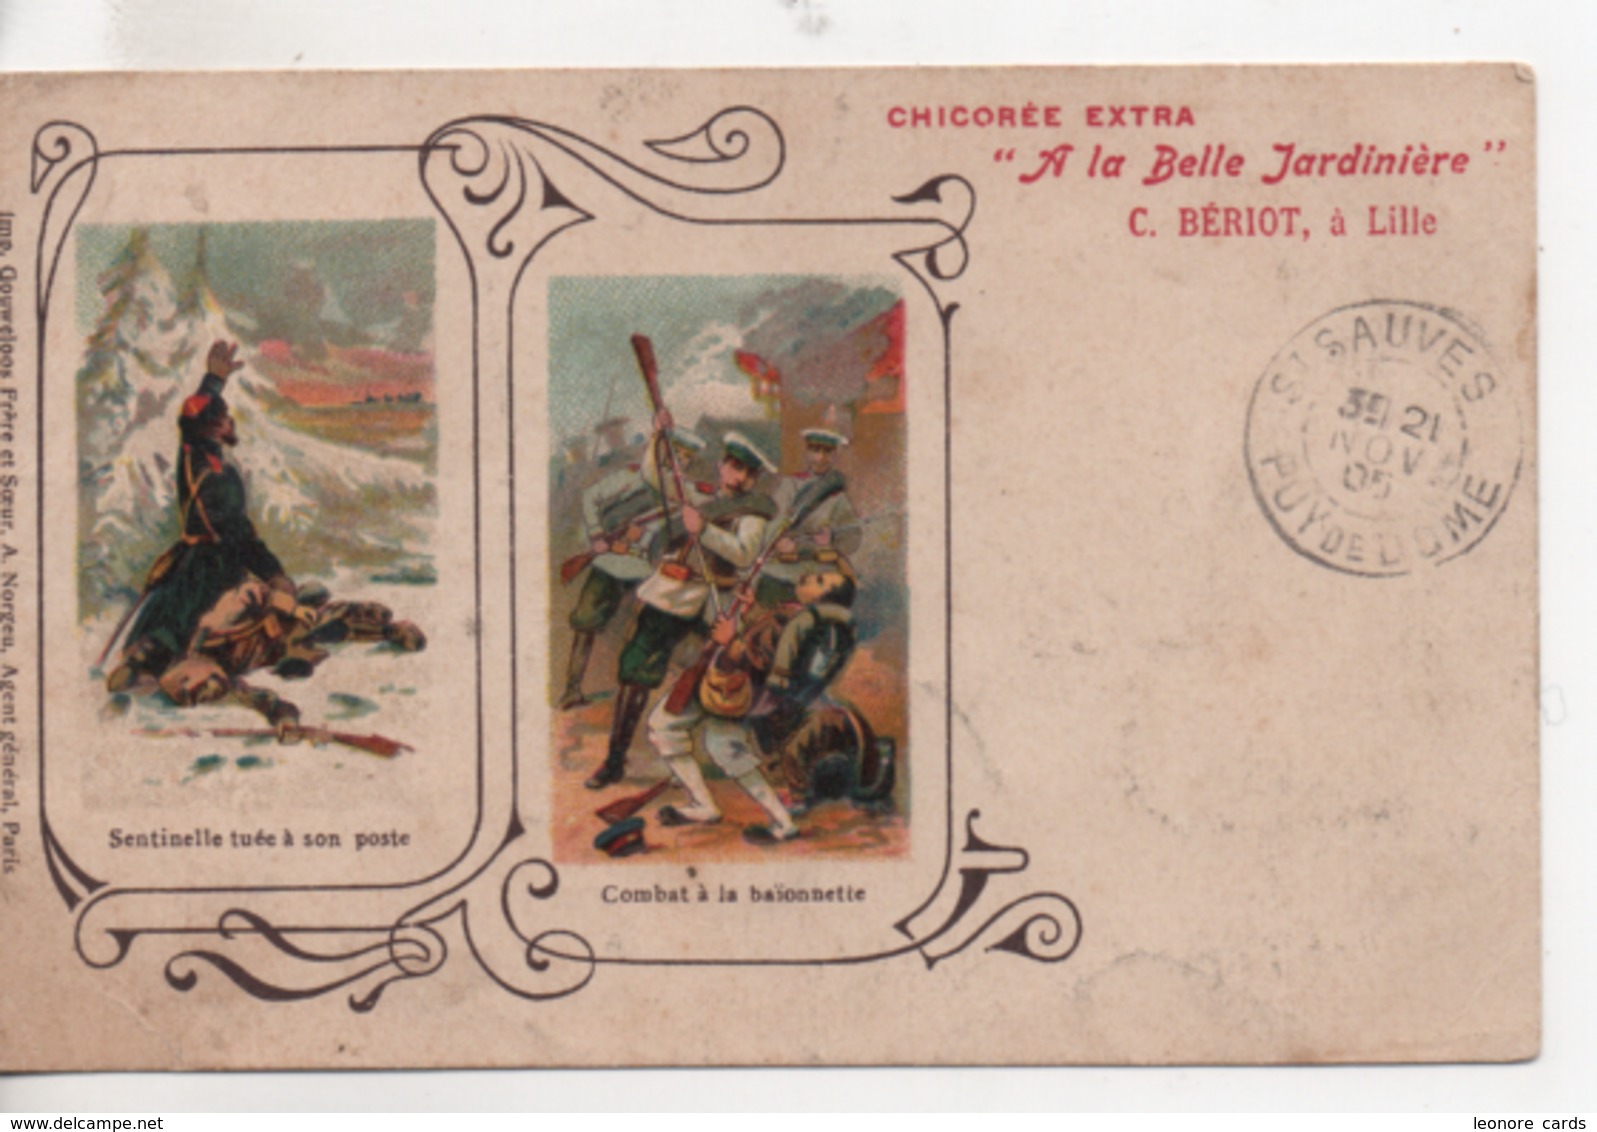 CPA.Publicité.Chicorée Extra.A La Belle Jardinière.1905.sentinelle Tuée Et Combat Baïonnette - Publicité